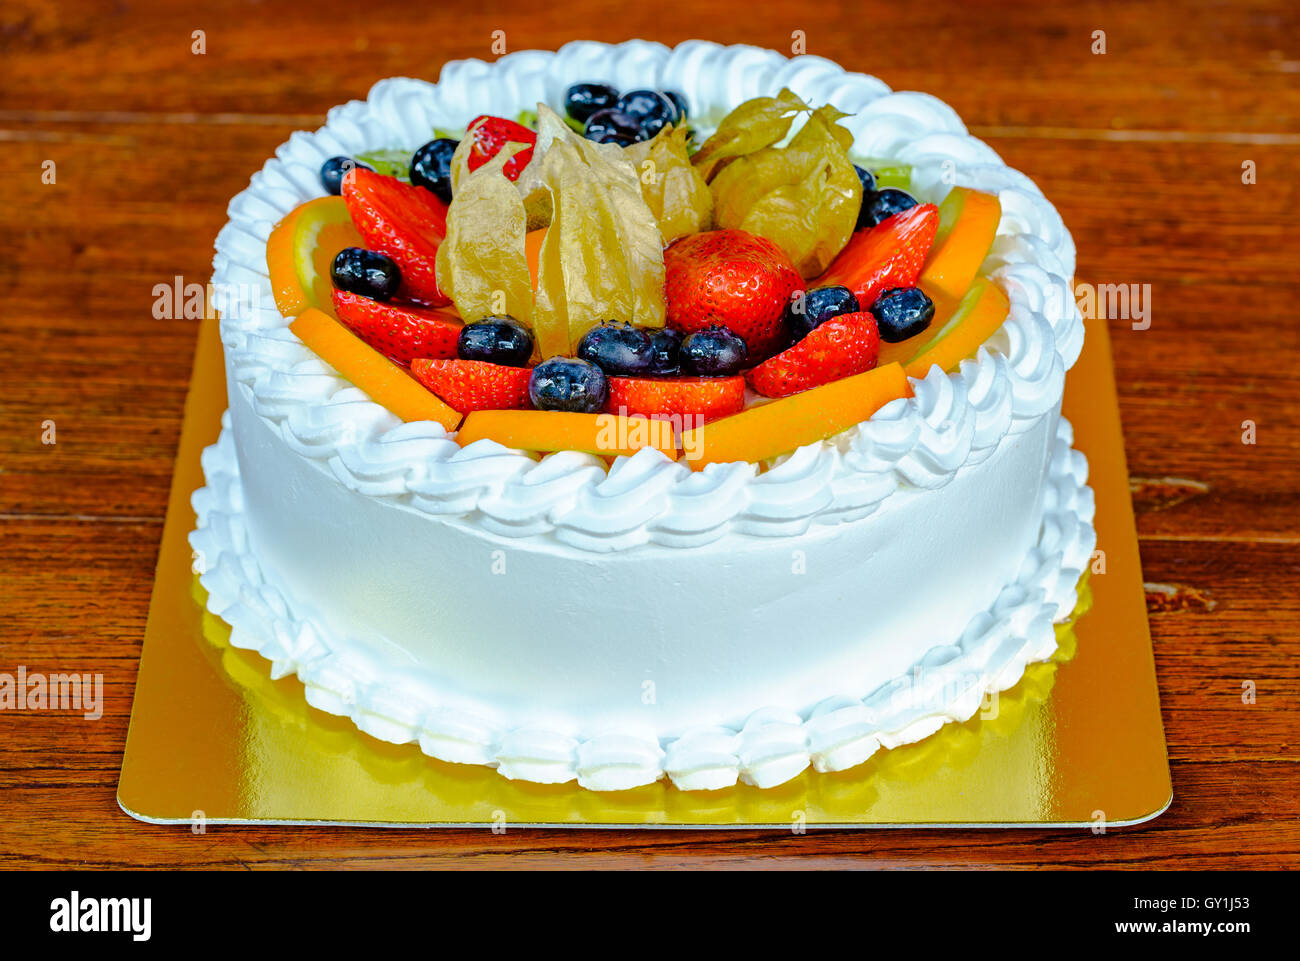 Leckeren Kuchen mit verschiedenen Arten von Früchten garniert Stockfoto